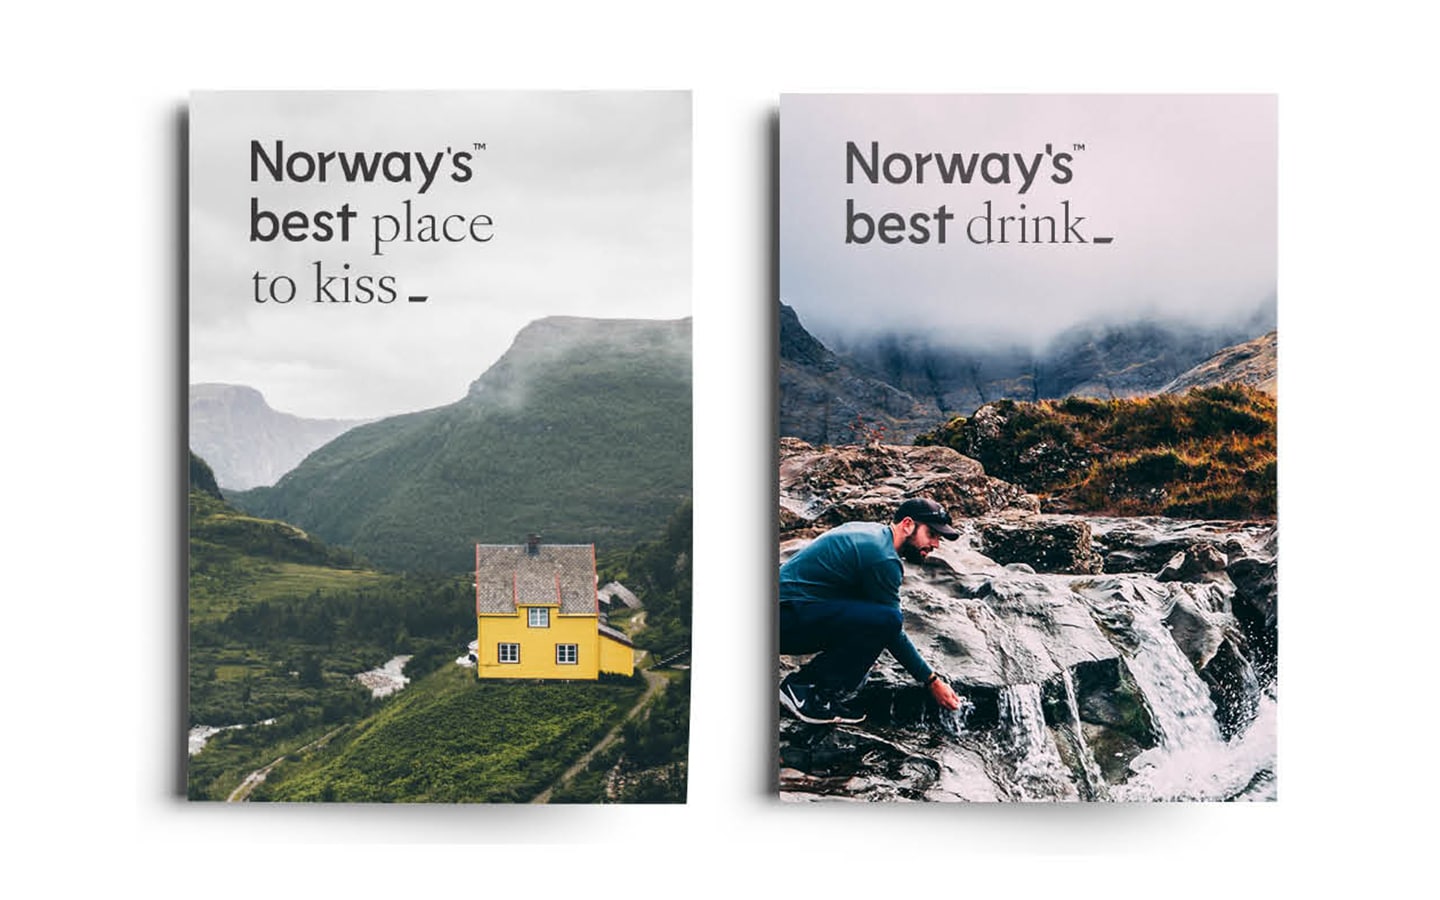 To katalogforsider, den ene har foto av et fjellandskap med et gult hus og teksten "Norway's best place to kiss" og det andre har foto av en mann som fyller hendene sine med vann fra en bekk og teksten "Norway's best drink".